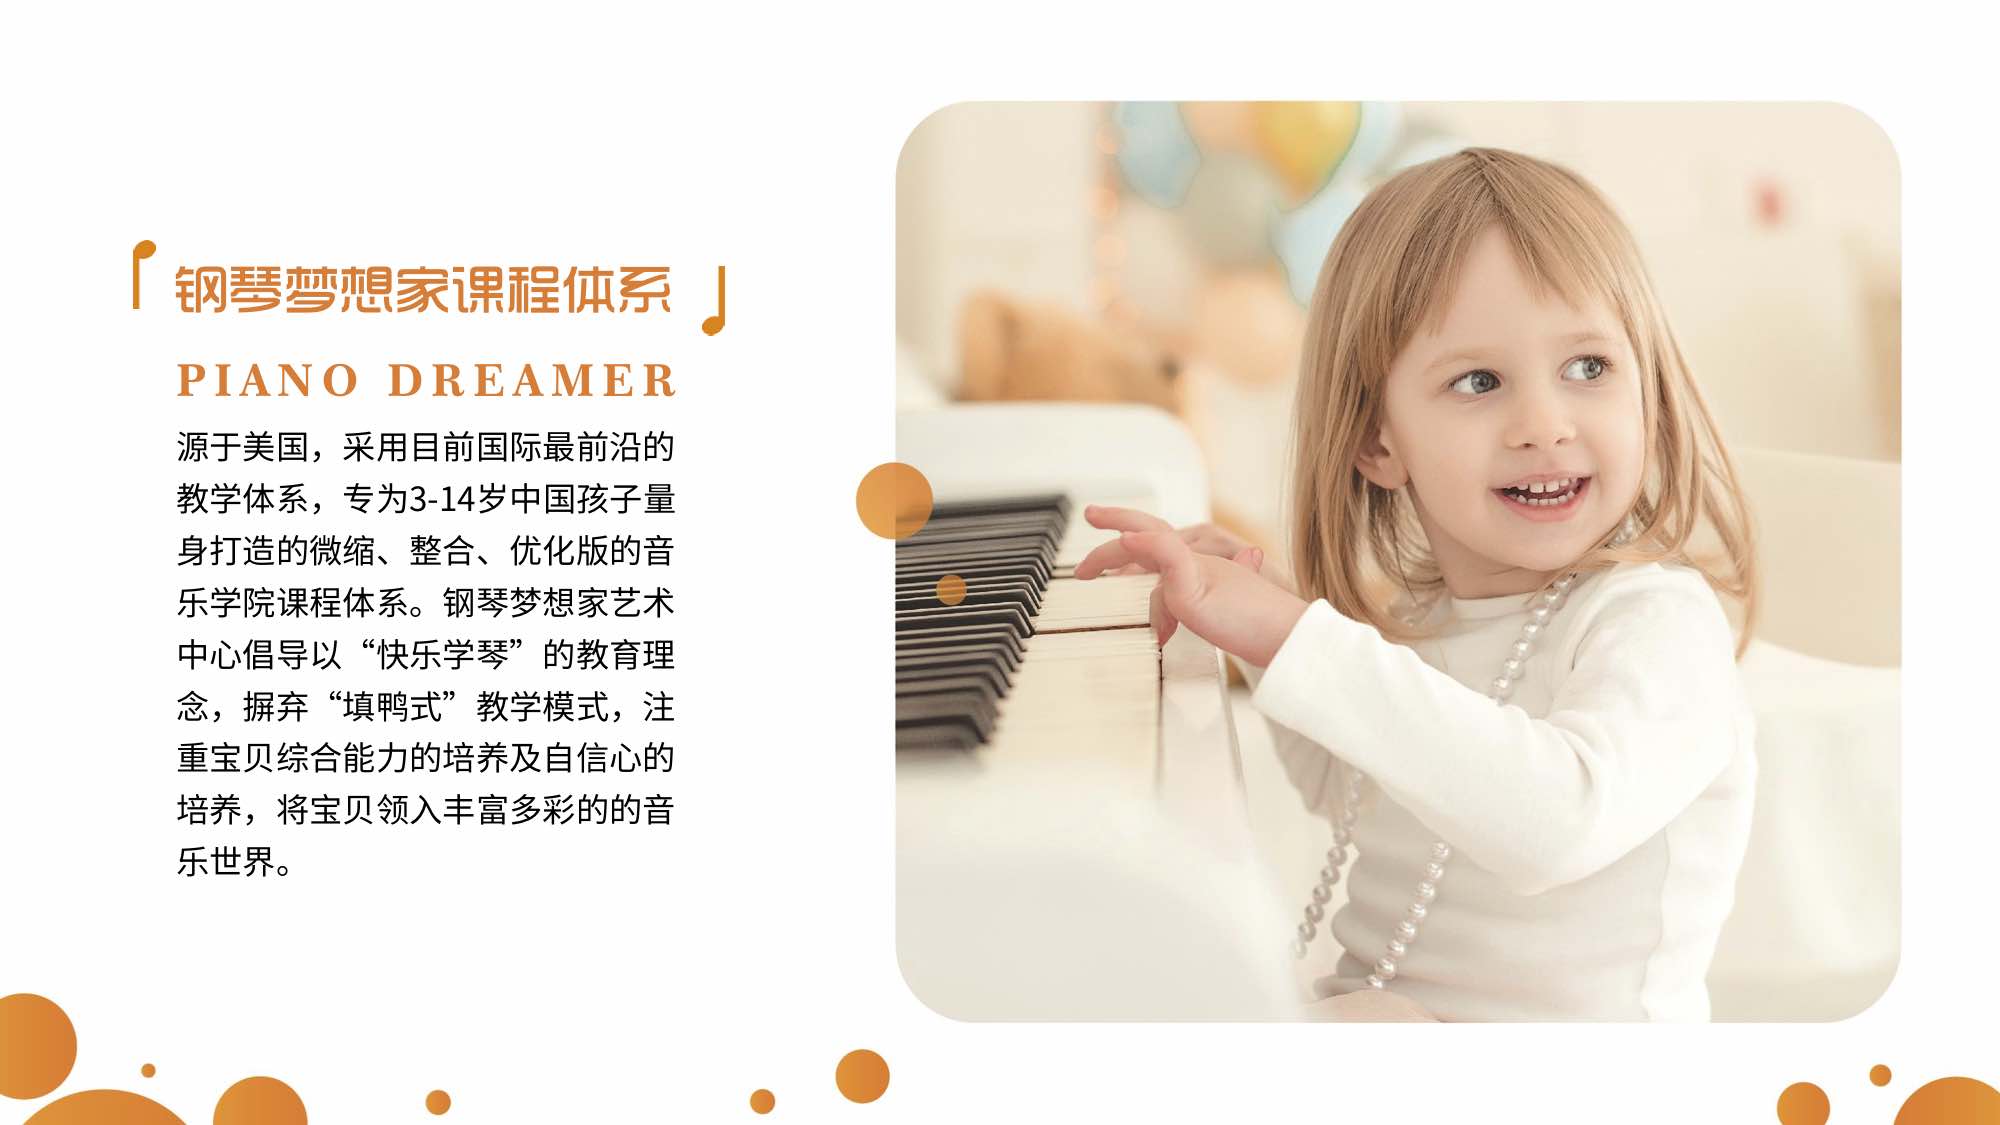 钢琴梦想家品牌